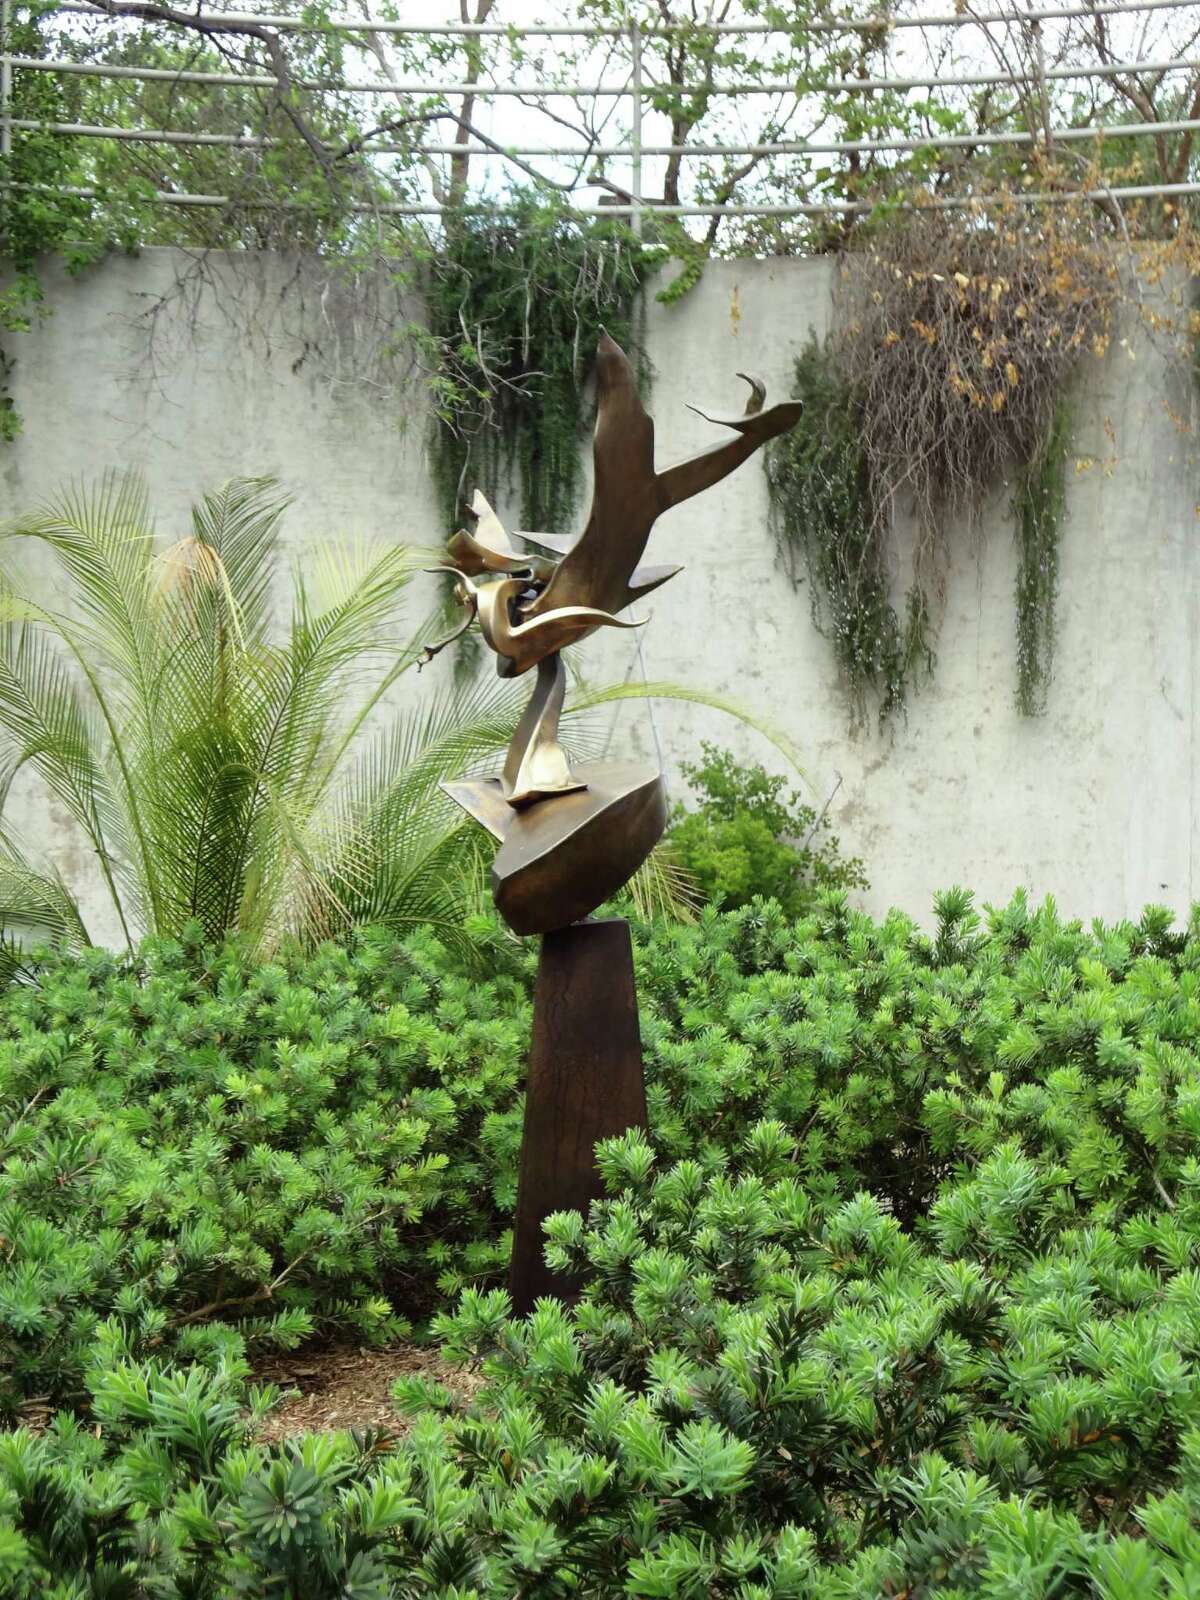 Richard Hunt's welded bronze "Poseidon" is part of "Art in the Garden" at the San Antonio Botanical Garden.